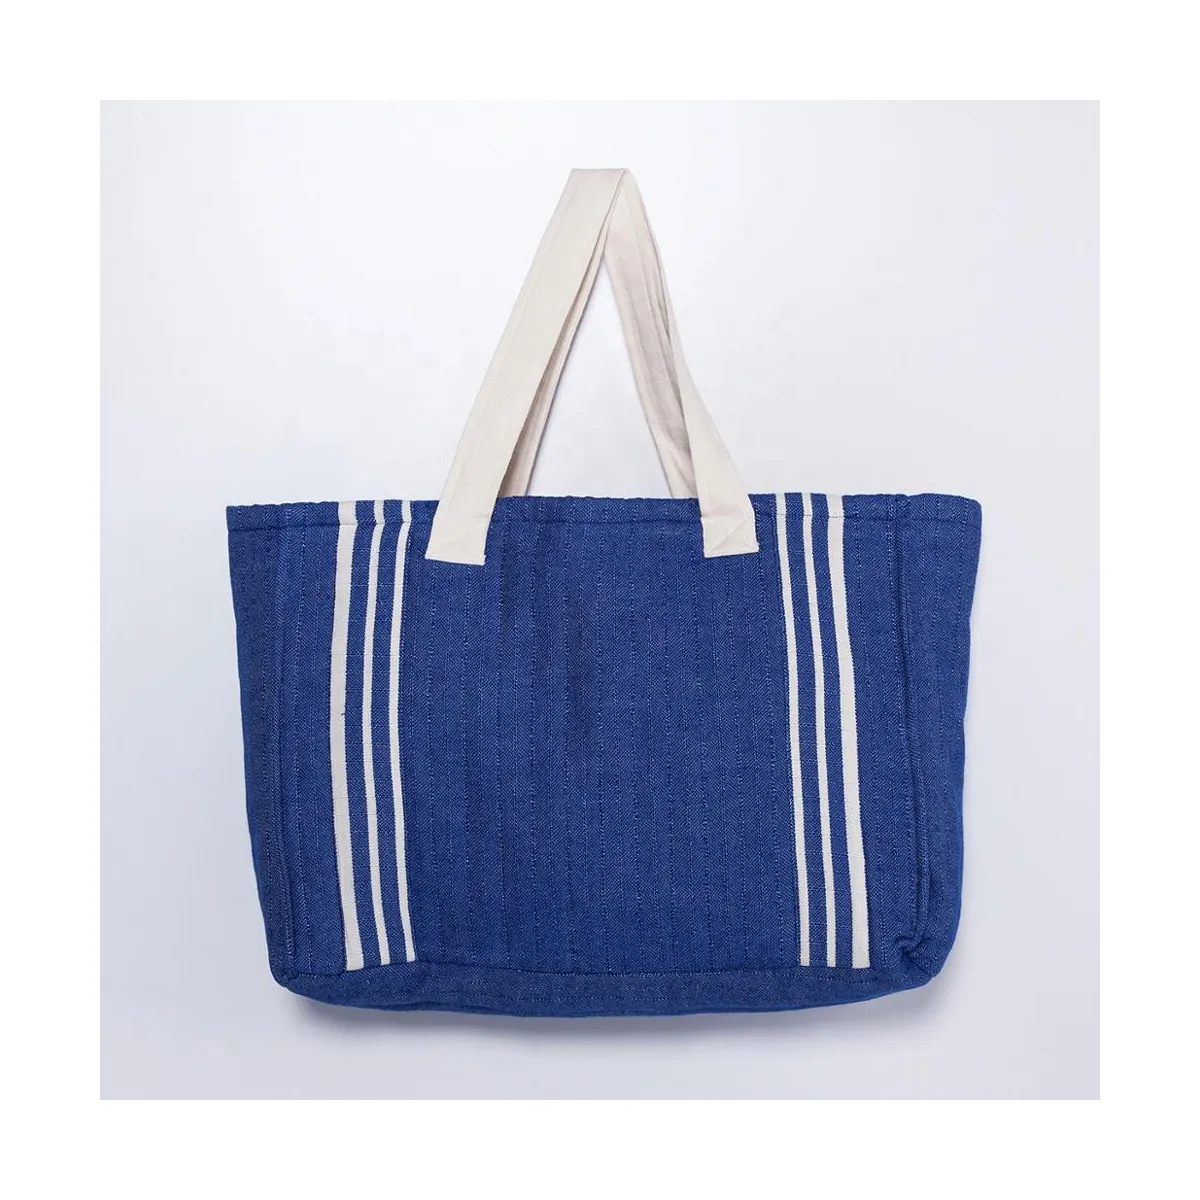 समुद्र तट बैग शॉपिंग बैग लदना बैग Handloomed कपास उच्च गुणवत्ता